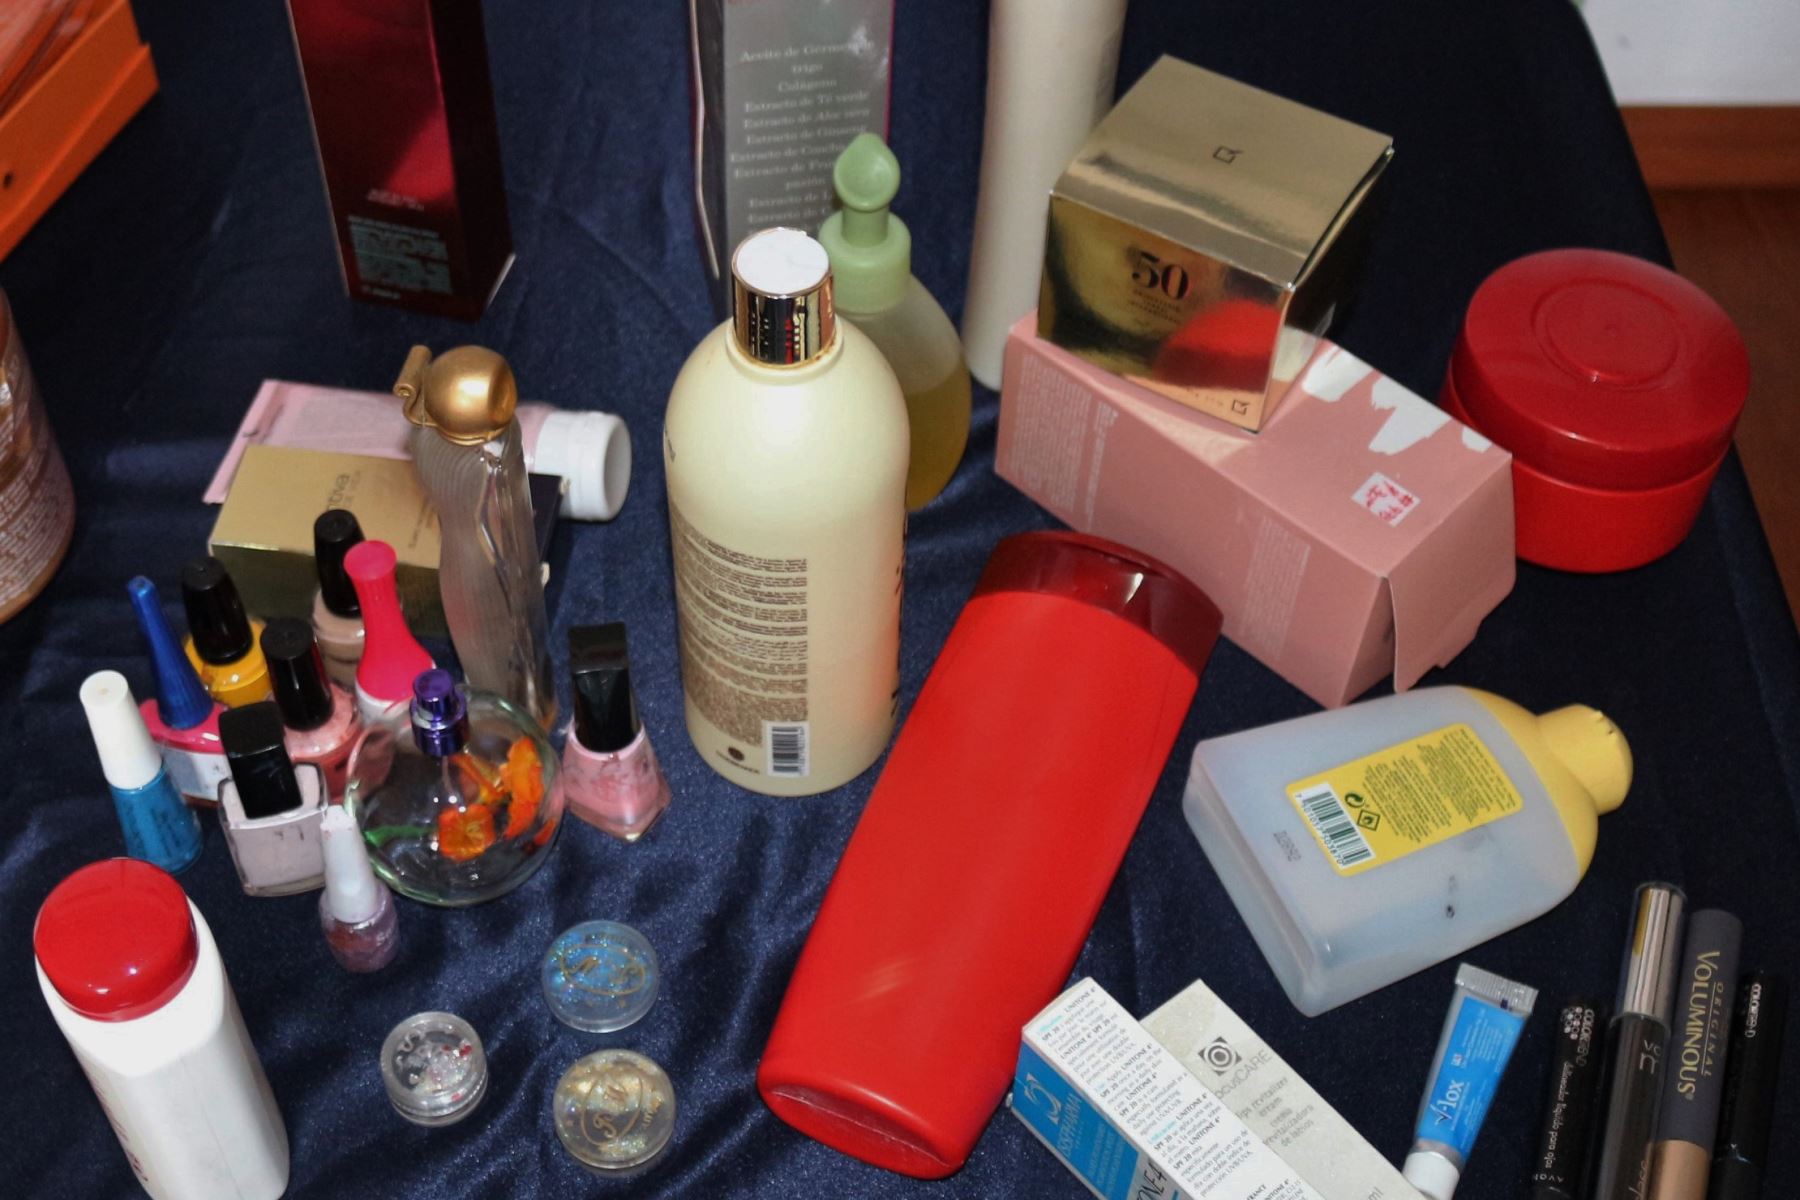 La Digemid recomienda no comprar cosméticos en tiendas informales y destruir los envases para evitar que sean rellenados con productos de dudosa procedencia. Foto: ANDINA/Difusión.